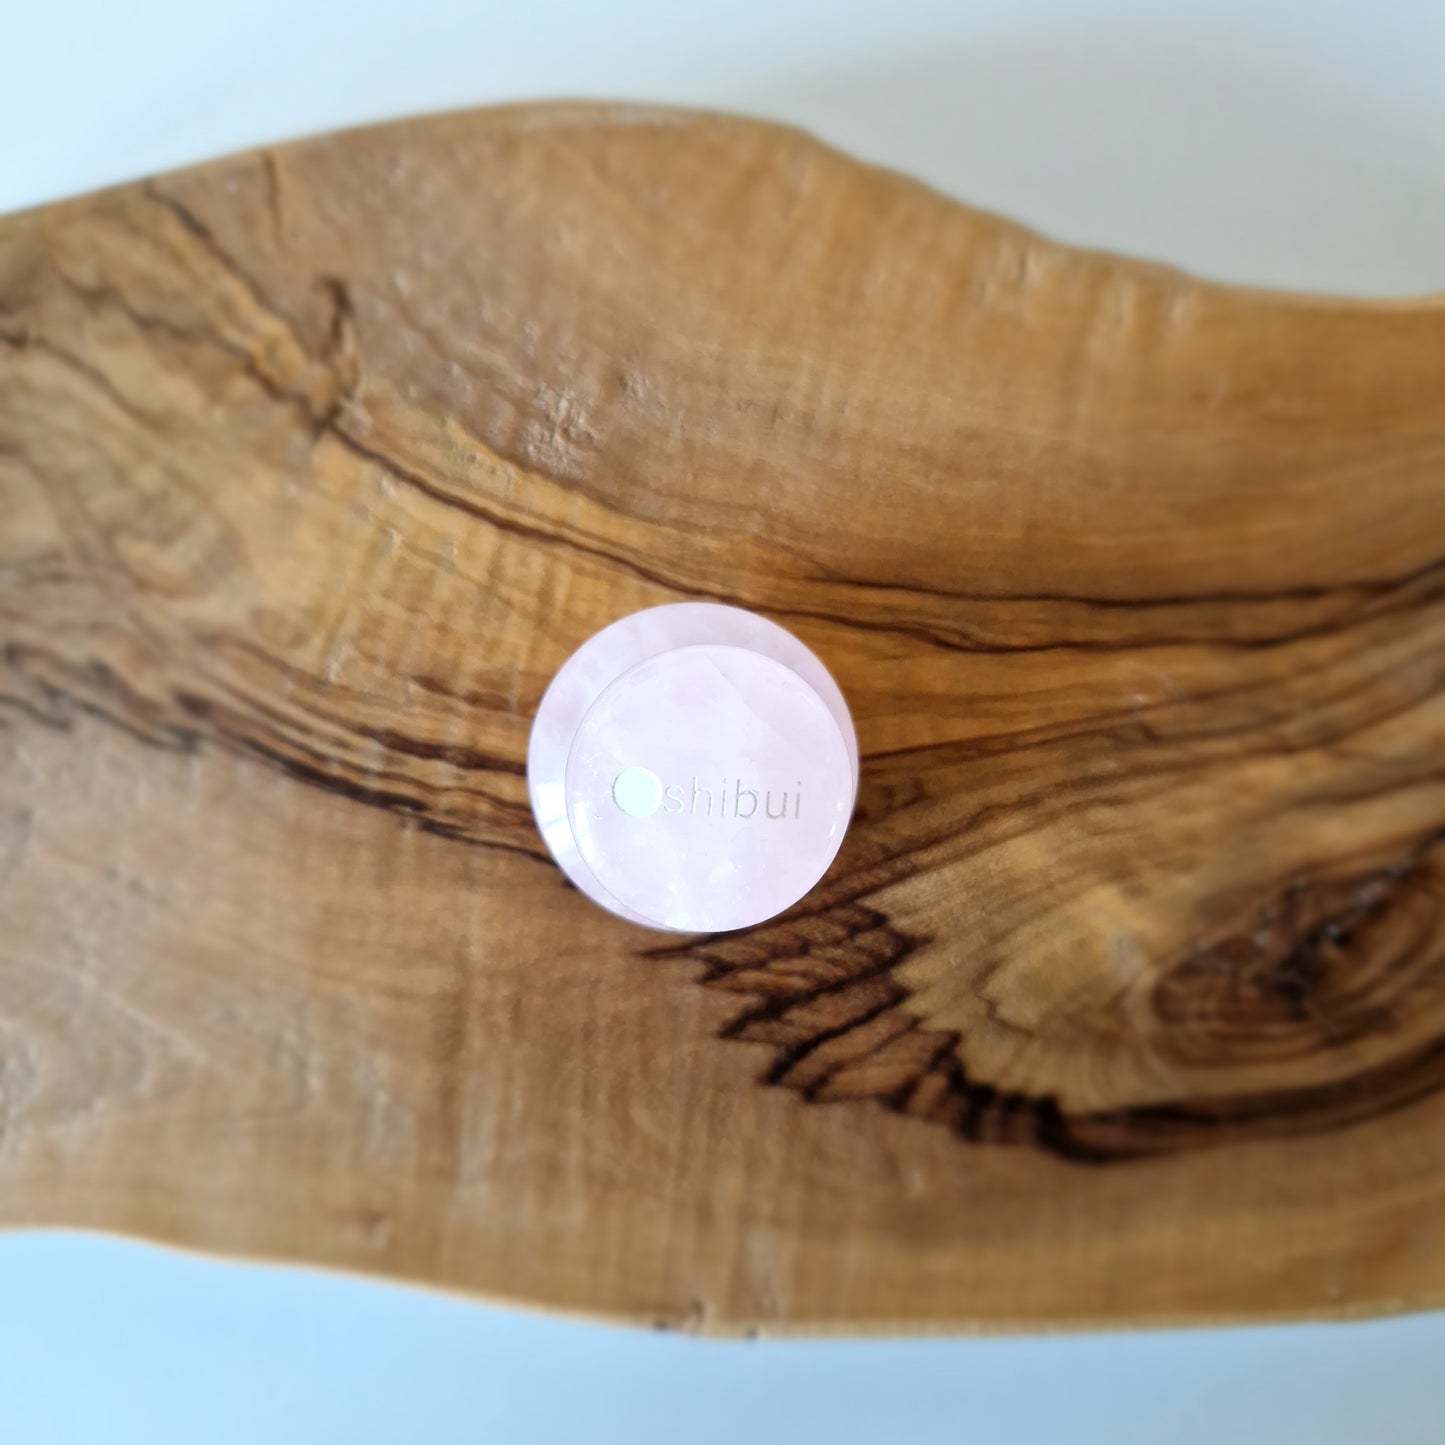 shibui gua sha a forma di fungo in quarzo rosa